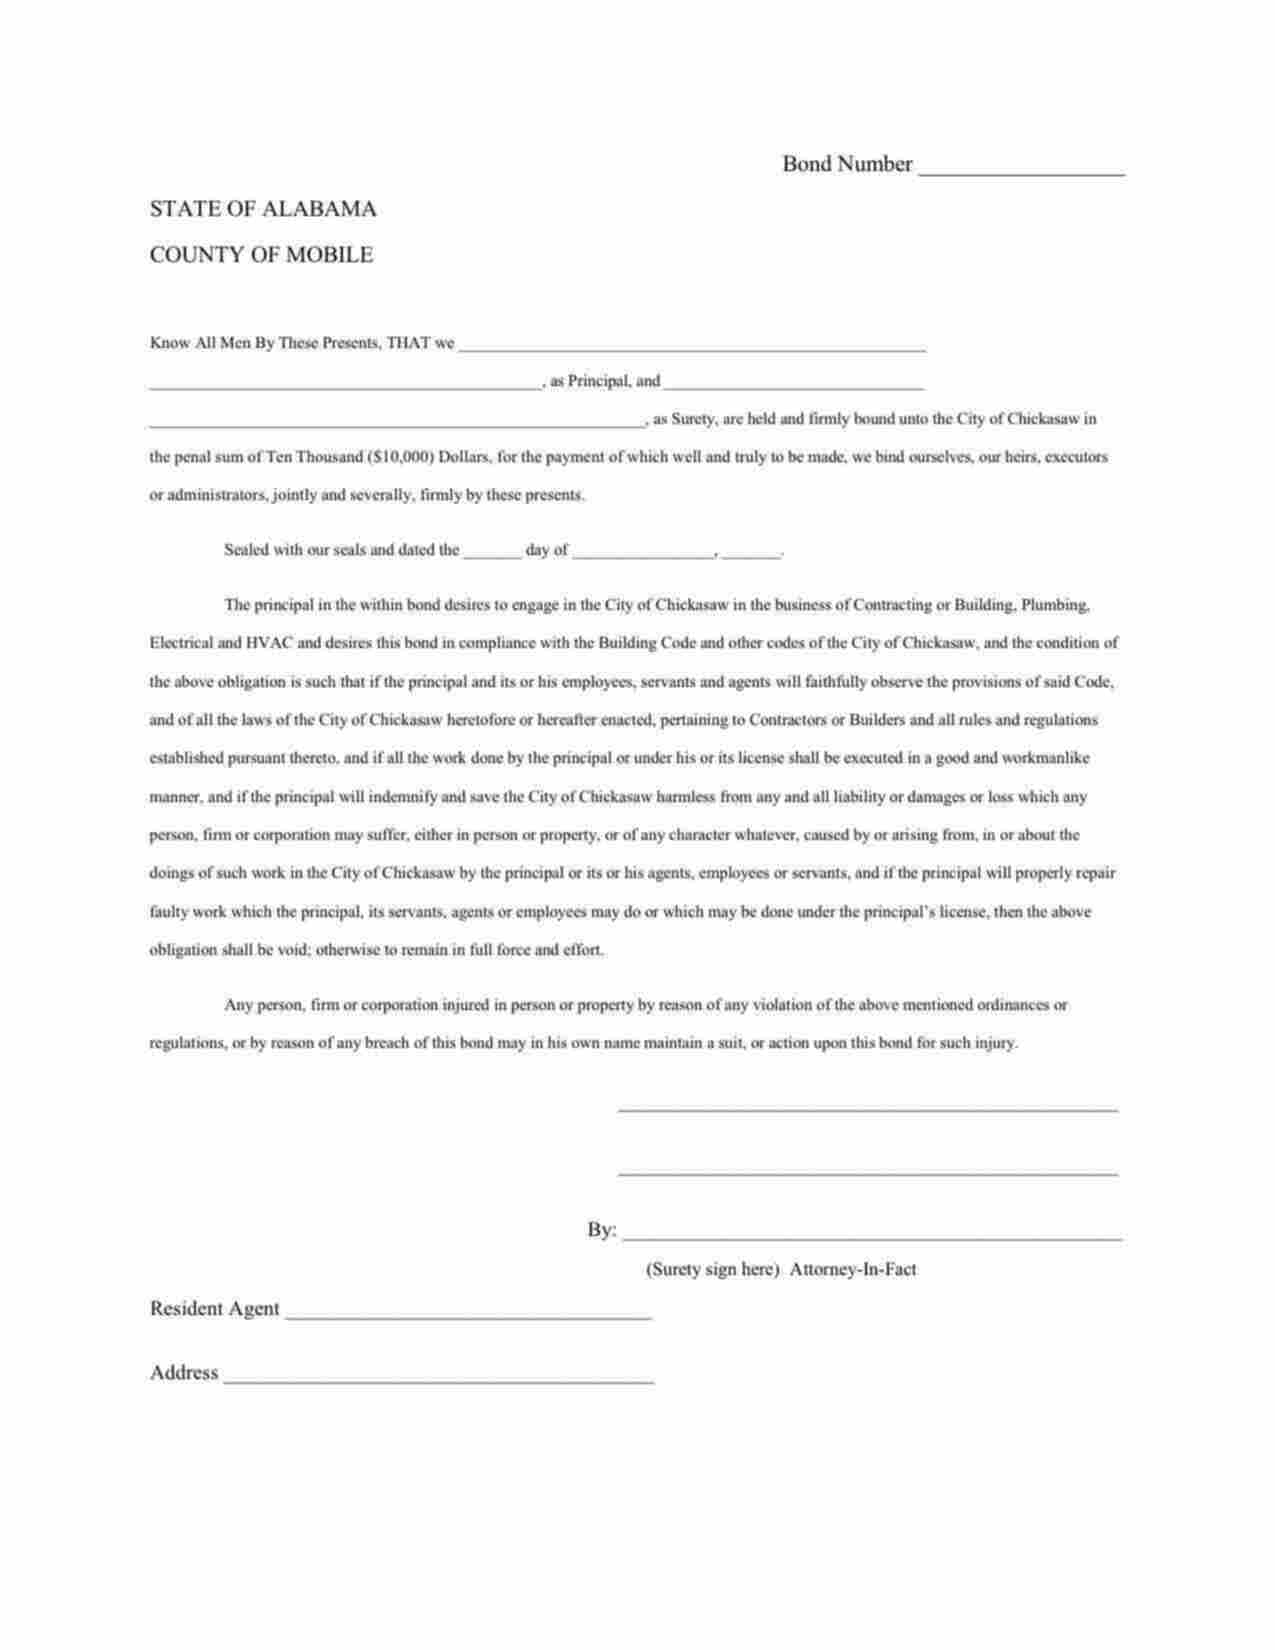 Alabama Contractor's License/Permit Bond Form